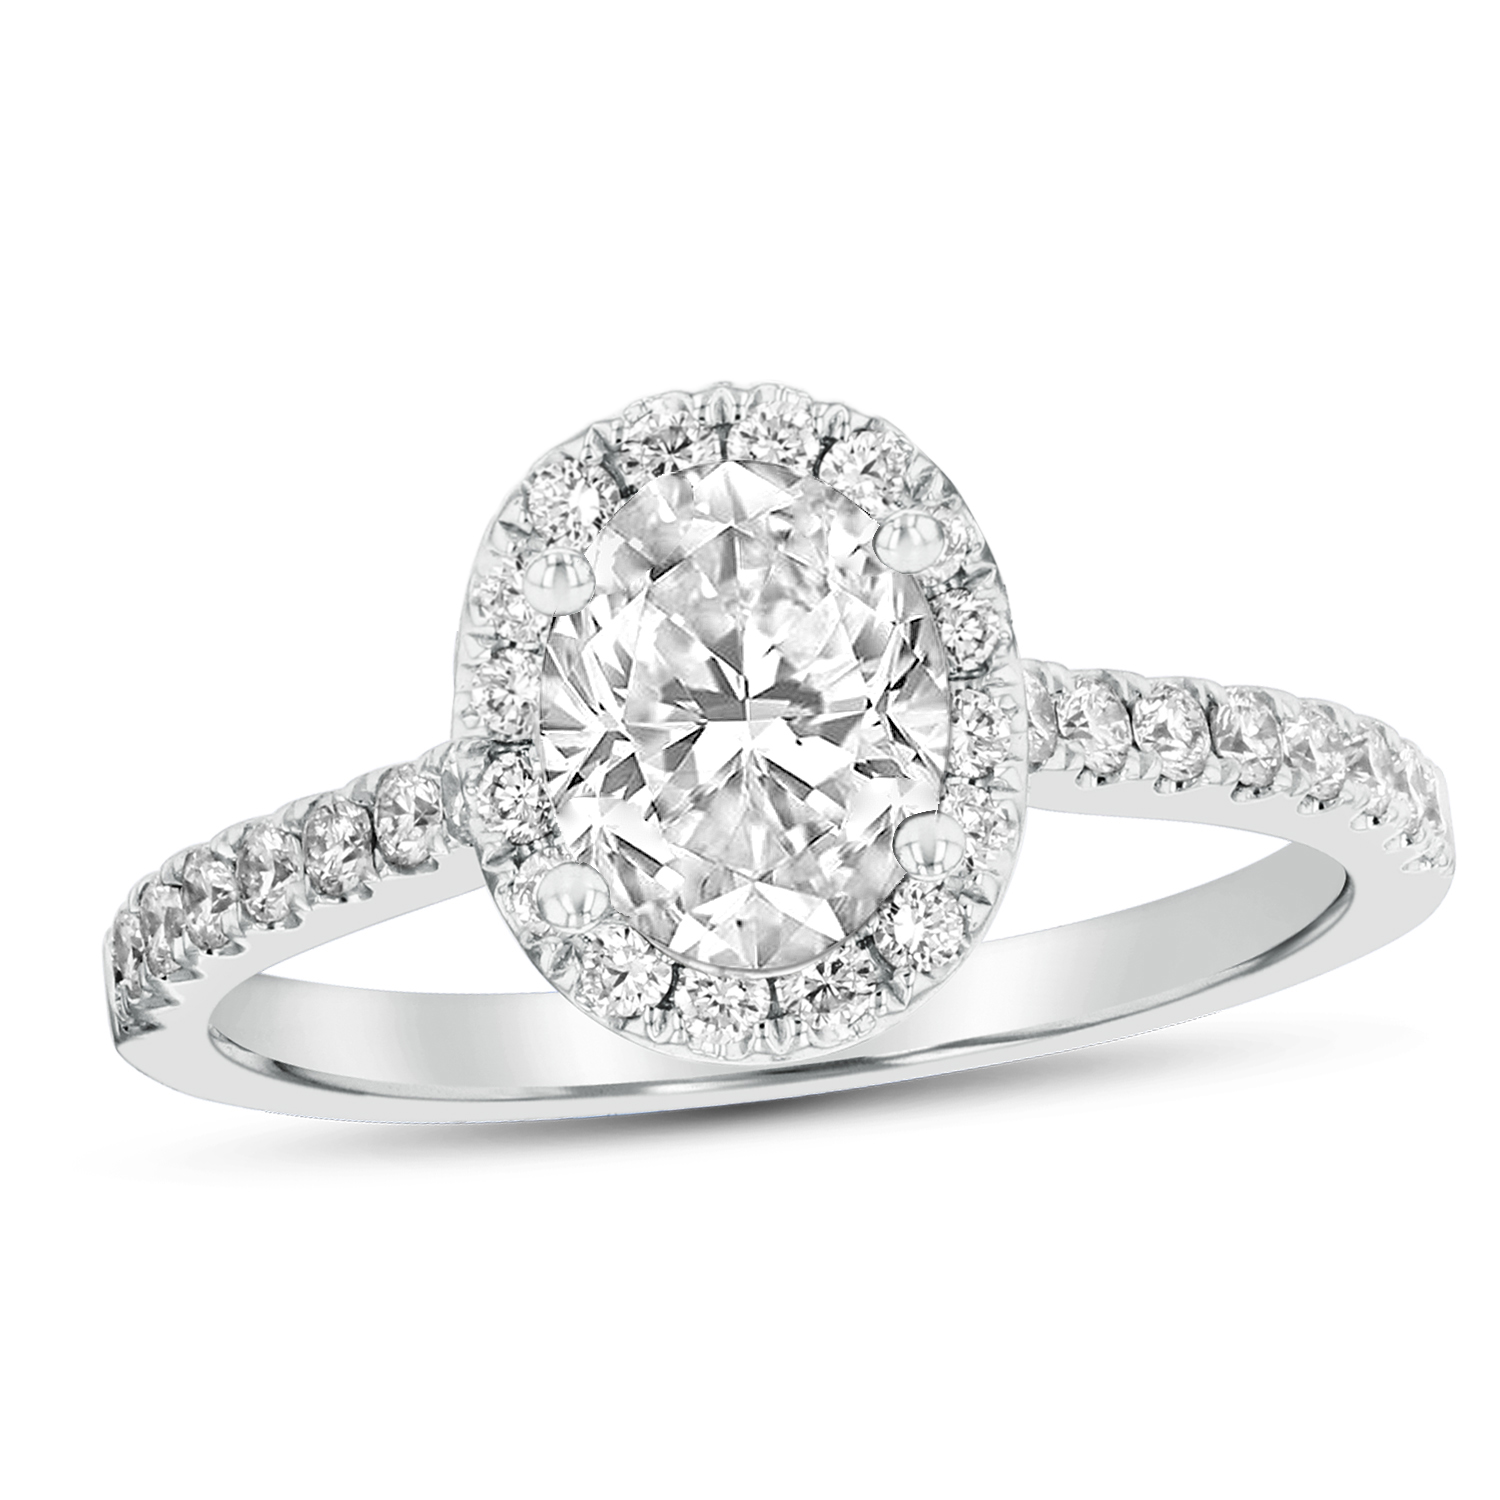 View 1.08ctw Diamond Engagement Ring in Platinum